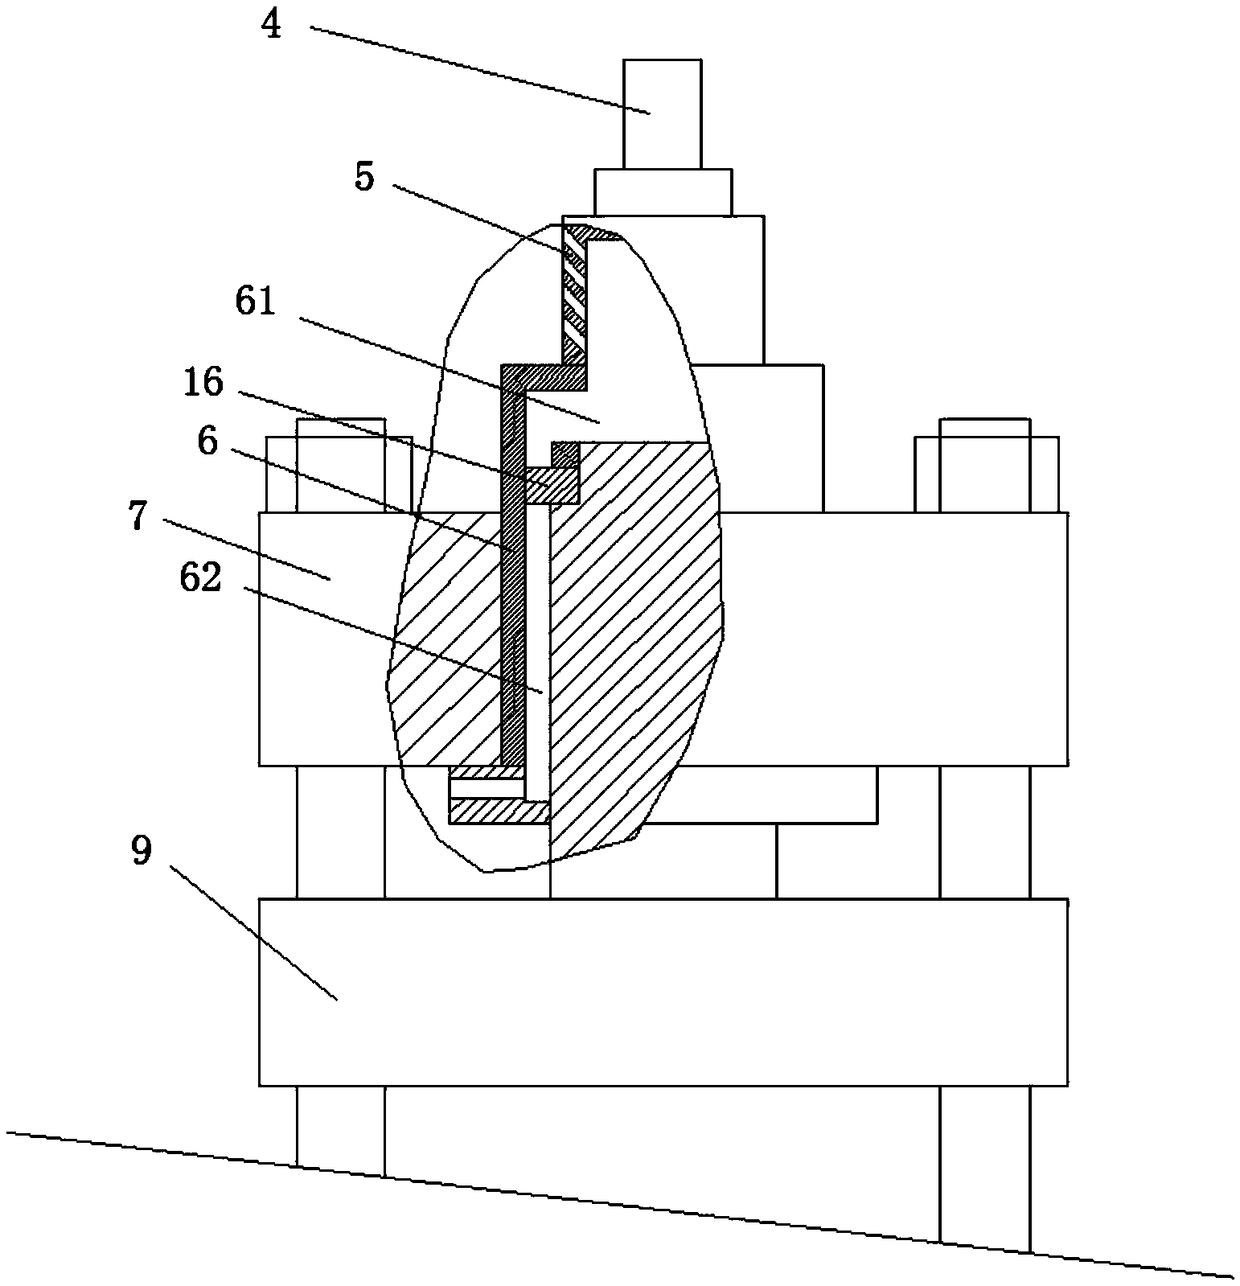 A hydraulic accumulator press